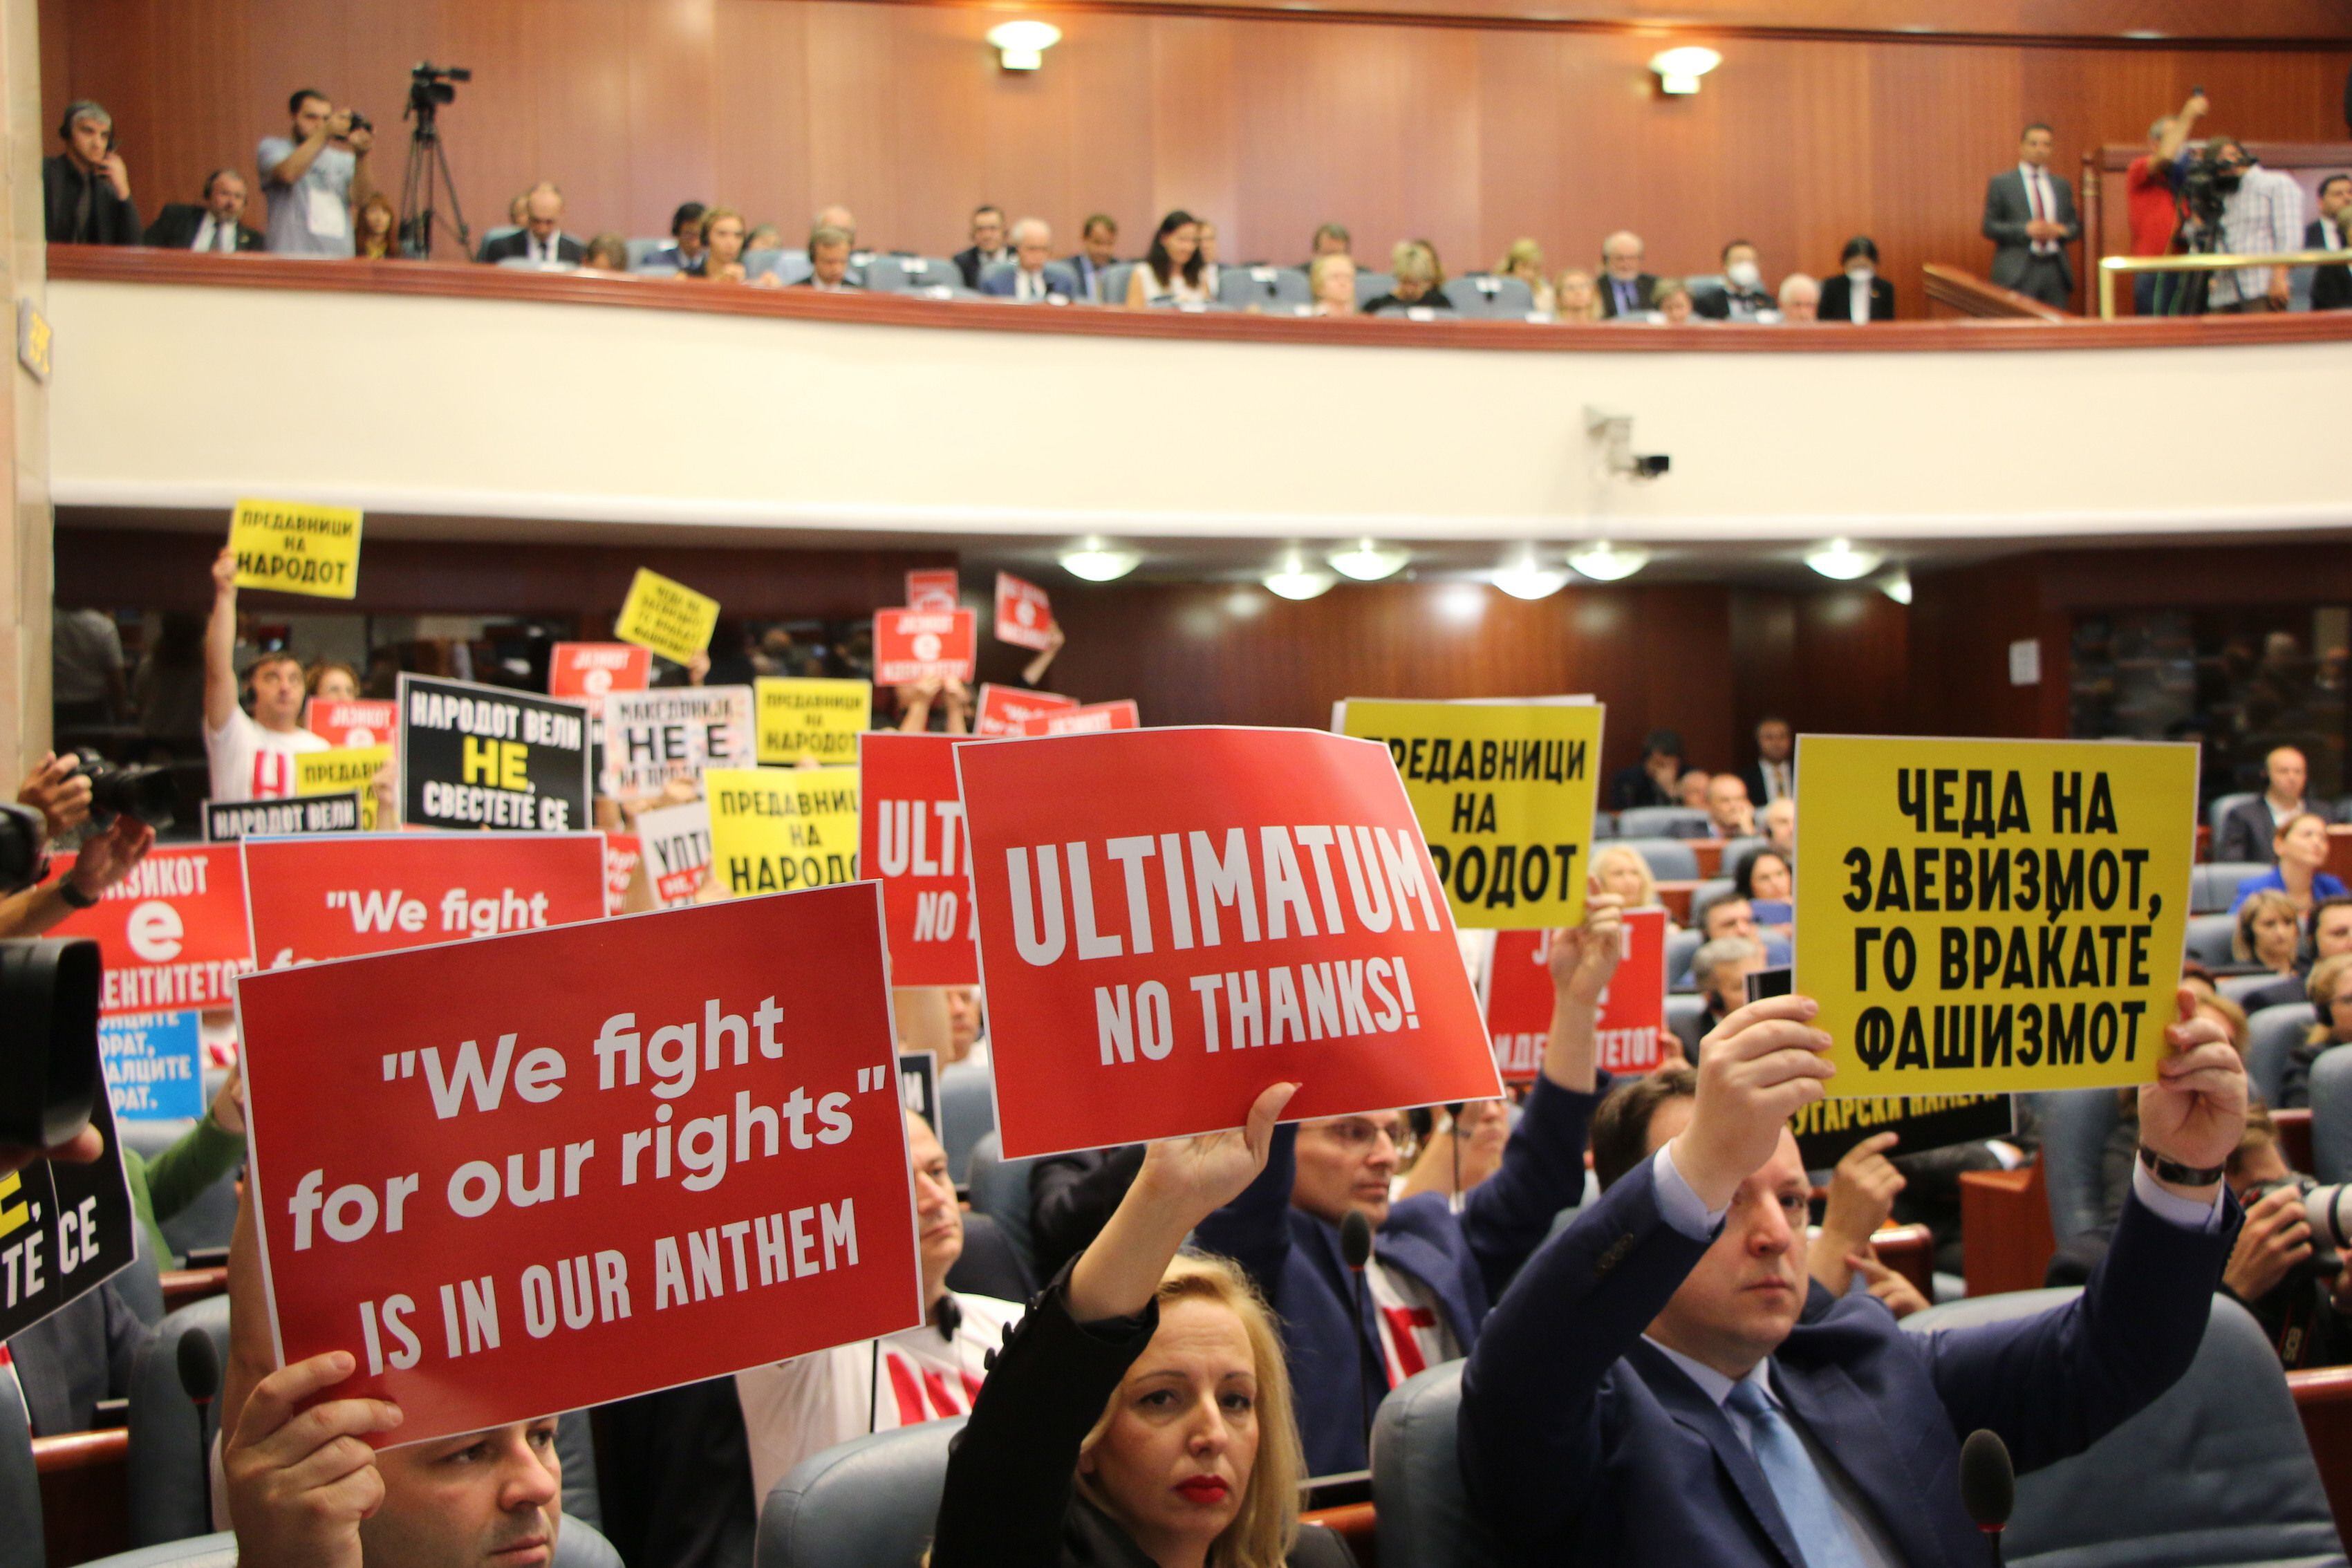 Diputados opositores muestran pancartas contra el pacto mientras Ursula Von der Leyen se dirige al Parlamento de Macedonia del Norte, durante una visita a Skopje, el pasado jueves.